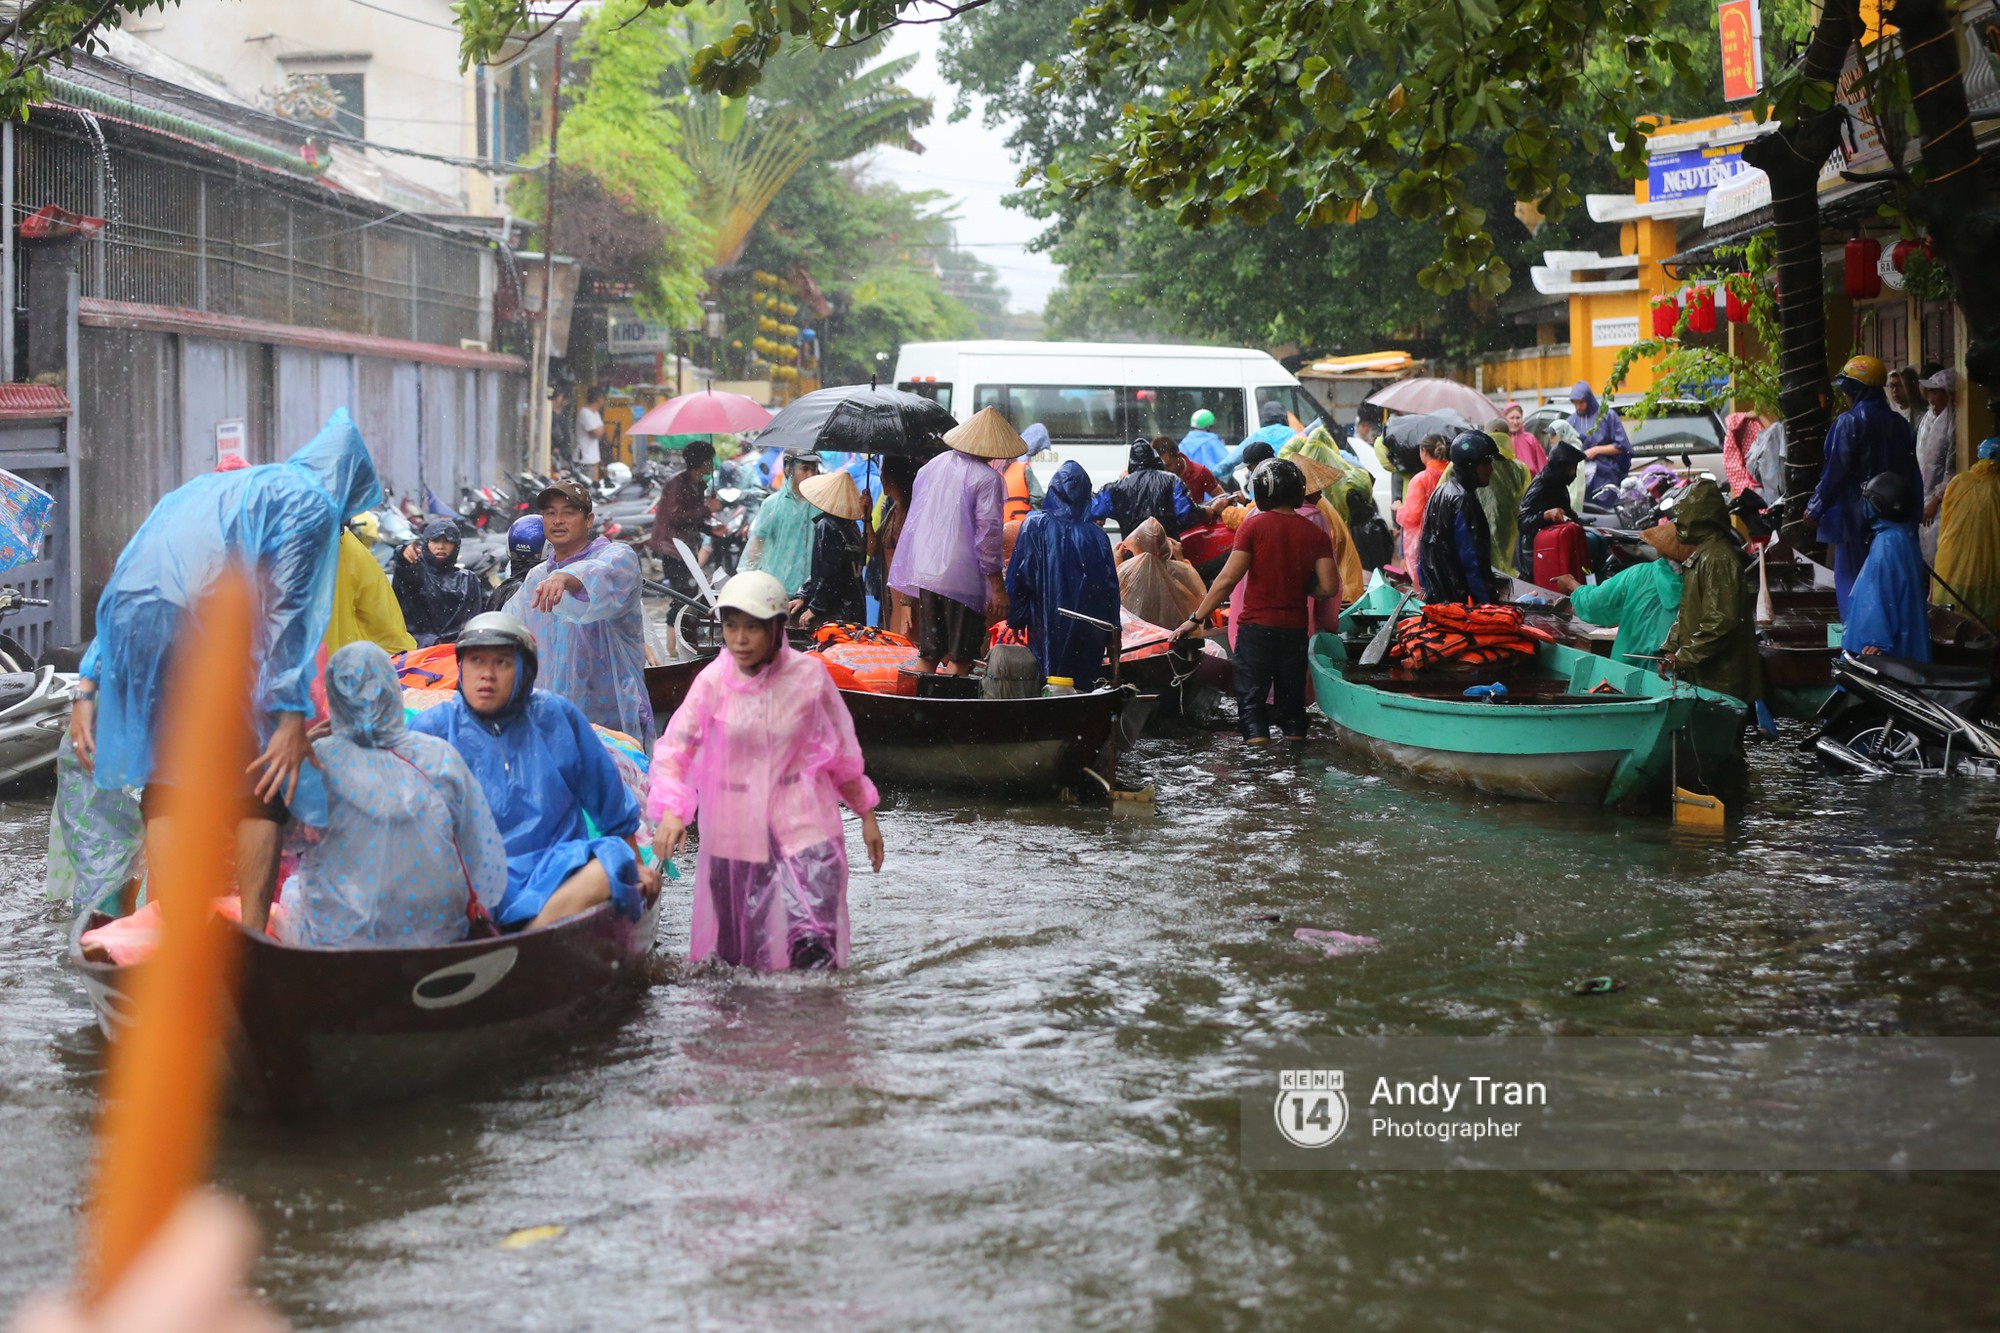 Chùm ảnh: Hội An nước ngập thành sông do ảnh hưởng của bão, người dân và du khách chật vật dùng thuyền bè di chuyển - Ảnh 24.